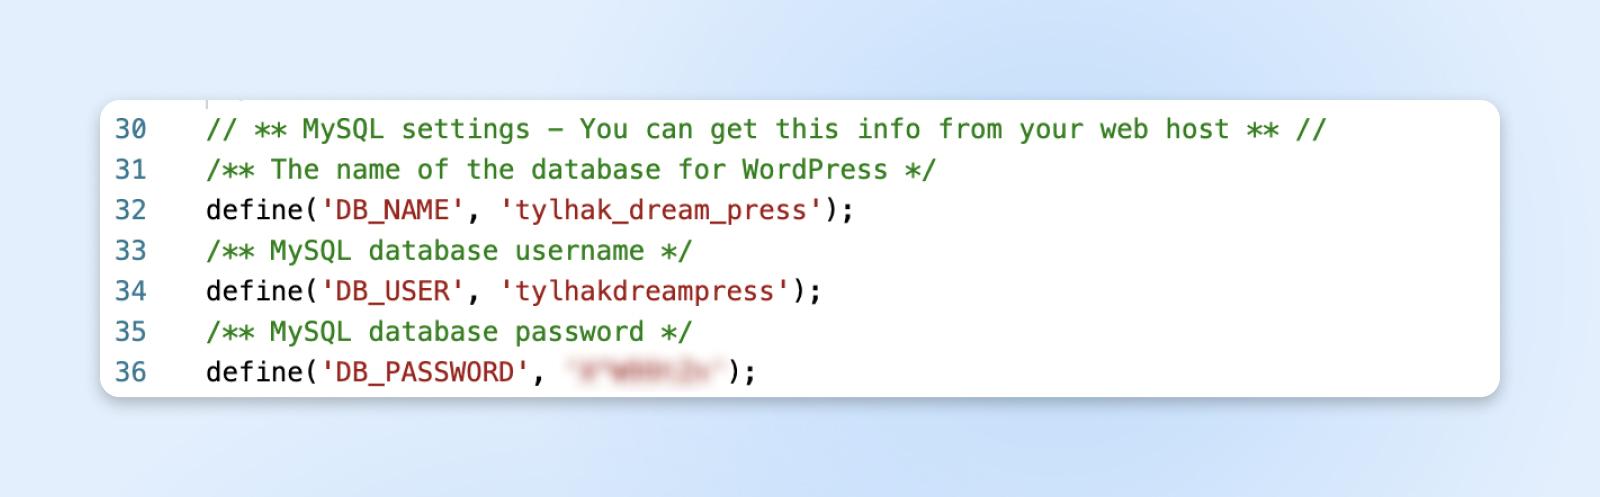 Código de configuración de base de datos de WordPress con definiciones de variables para nombre de base de datos, nombre de usuario y contraseña.